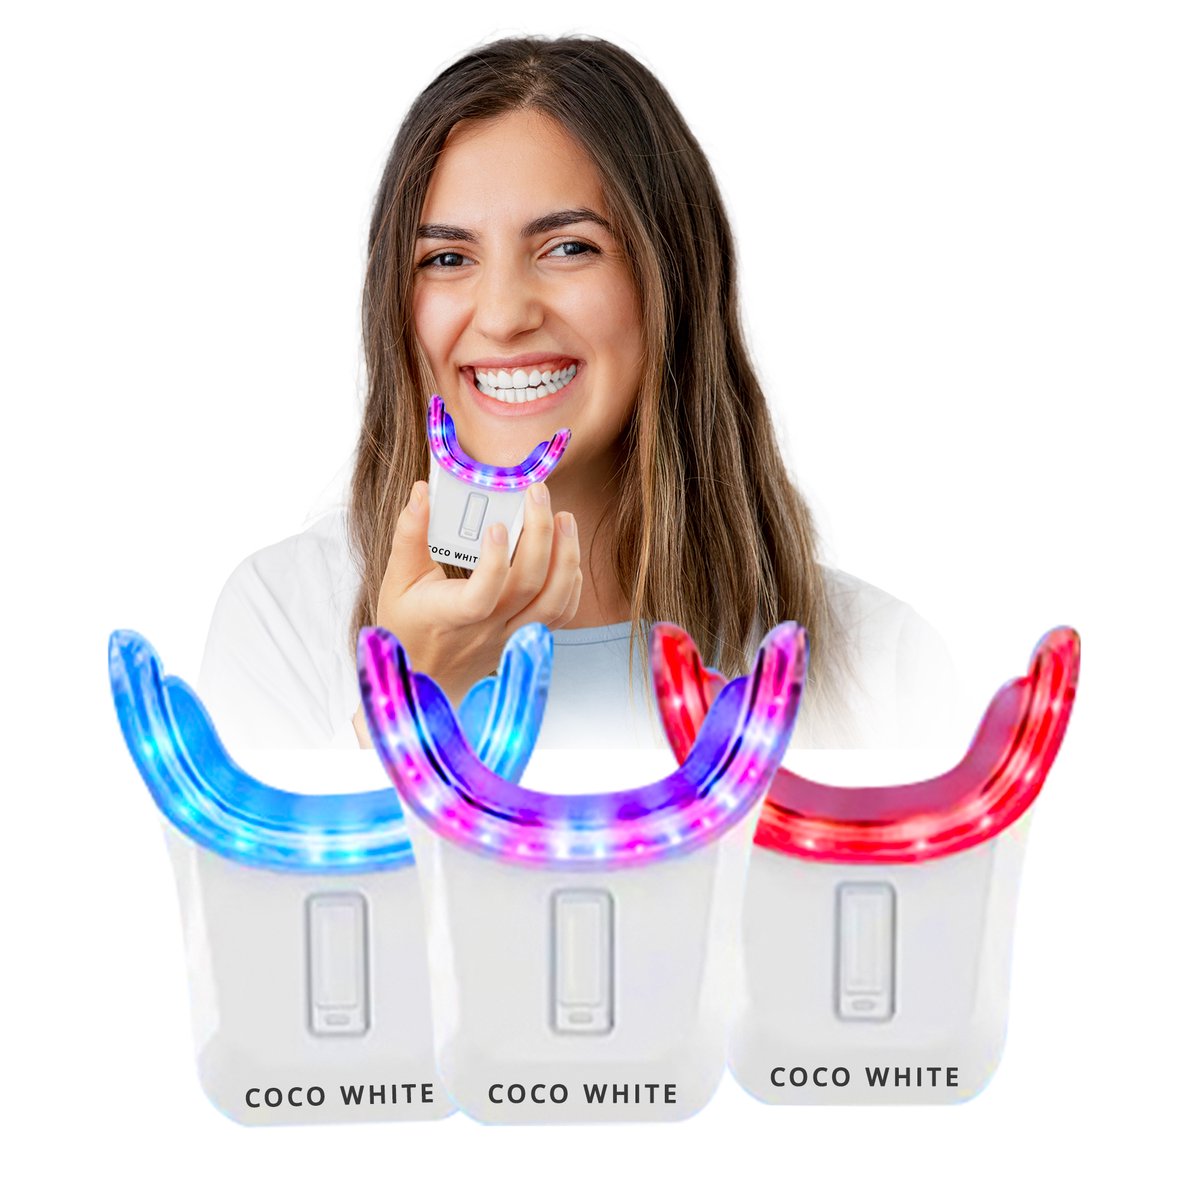 Coco White Tandenbleekset voor Witte tanden - Tanden Bleken met Teeth Whitening Strips - Tandenblekers zonder Peroxide